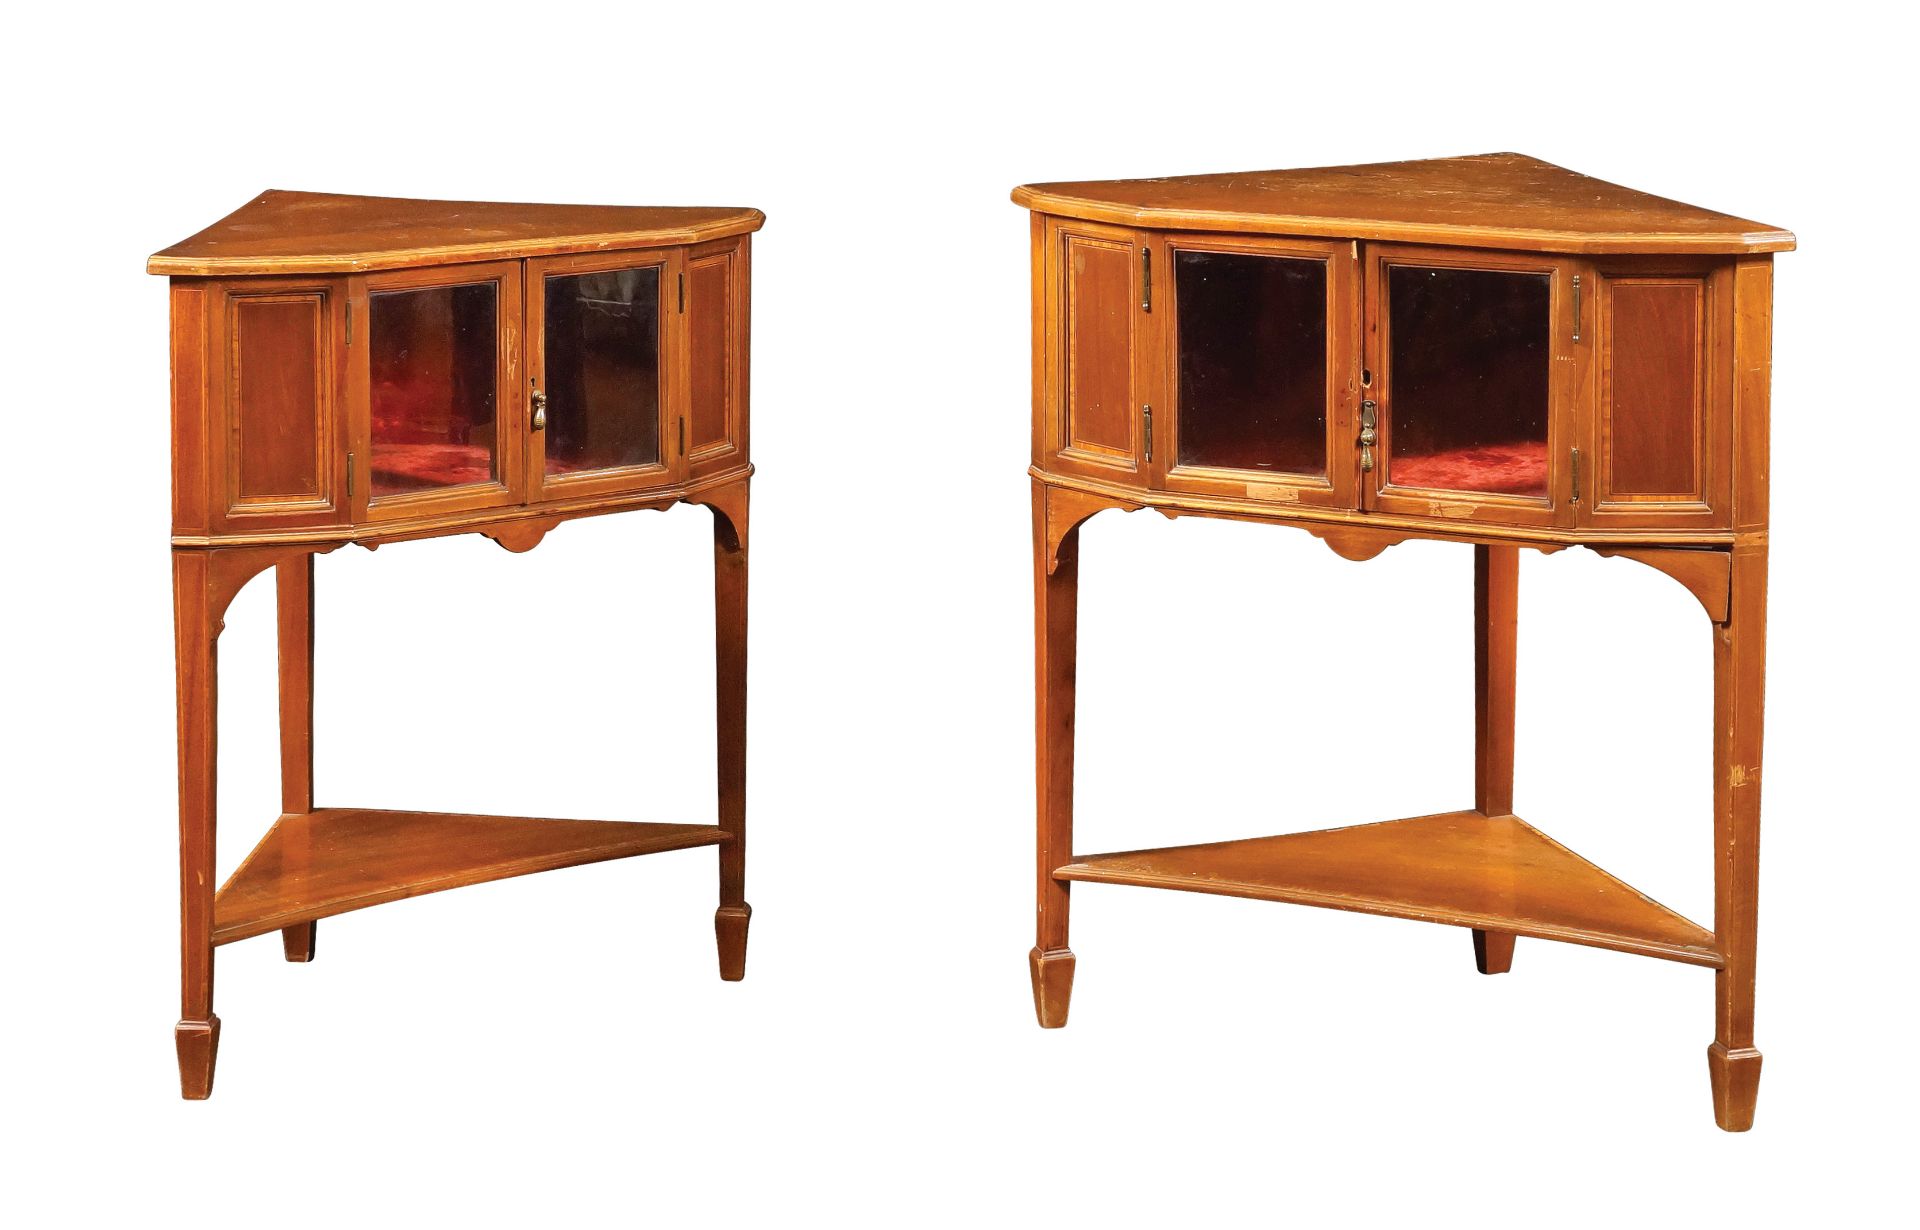 A pair of English mahogany corner sideboards